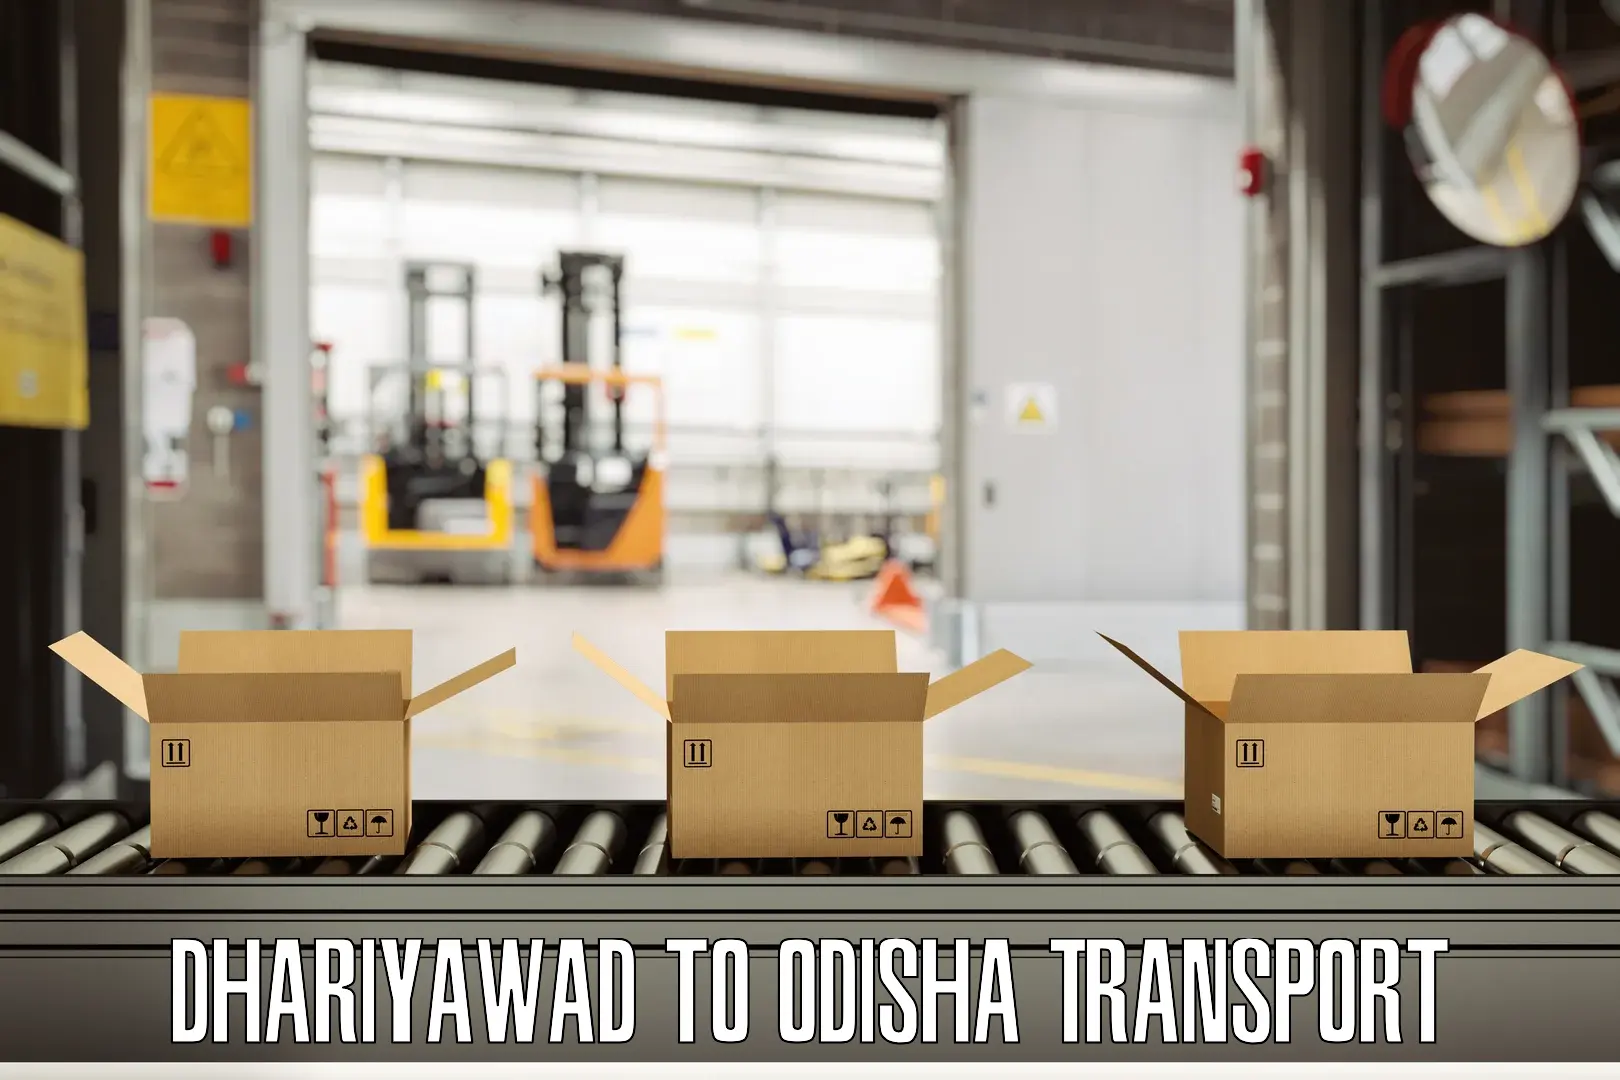 Interstate transport services Dhariyawad to Badamba